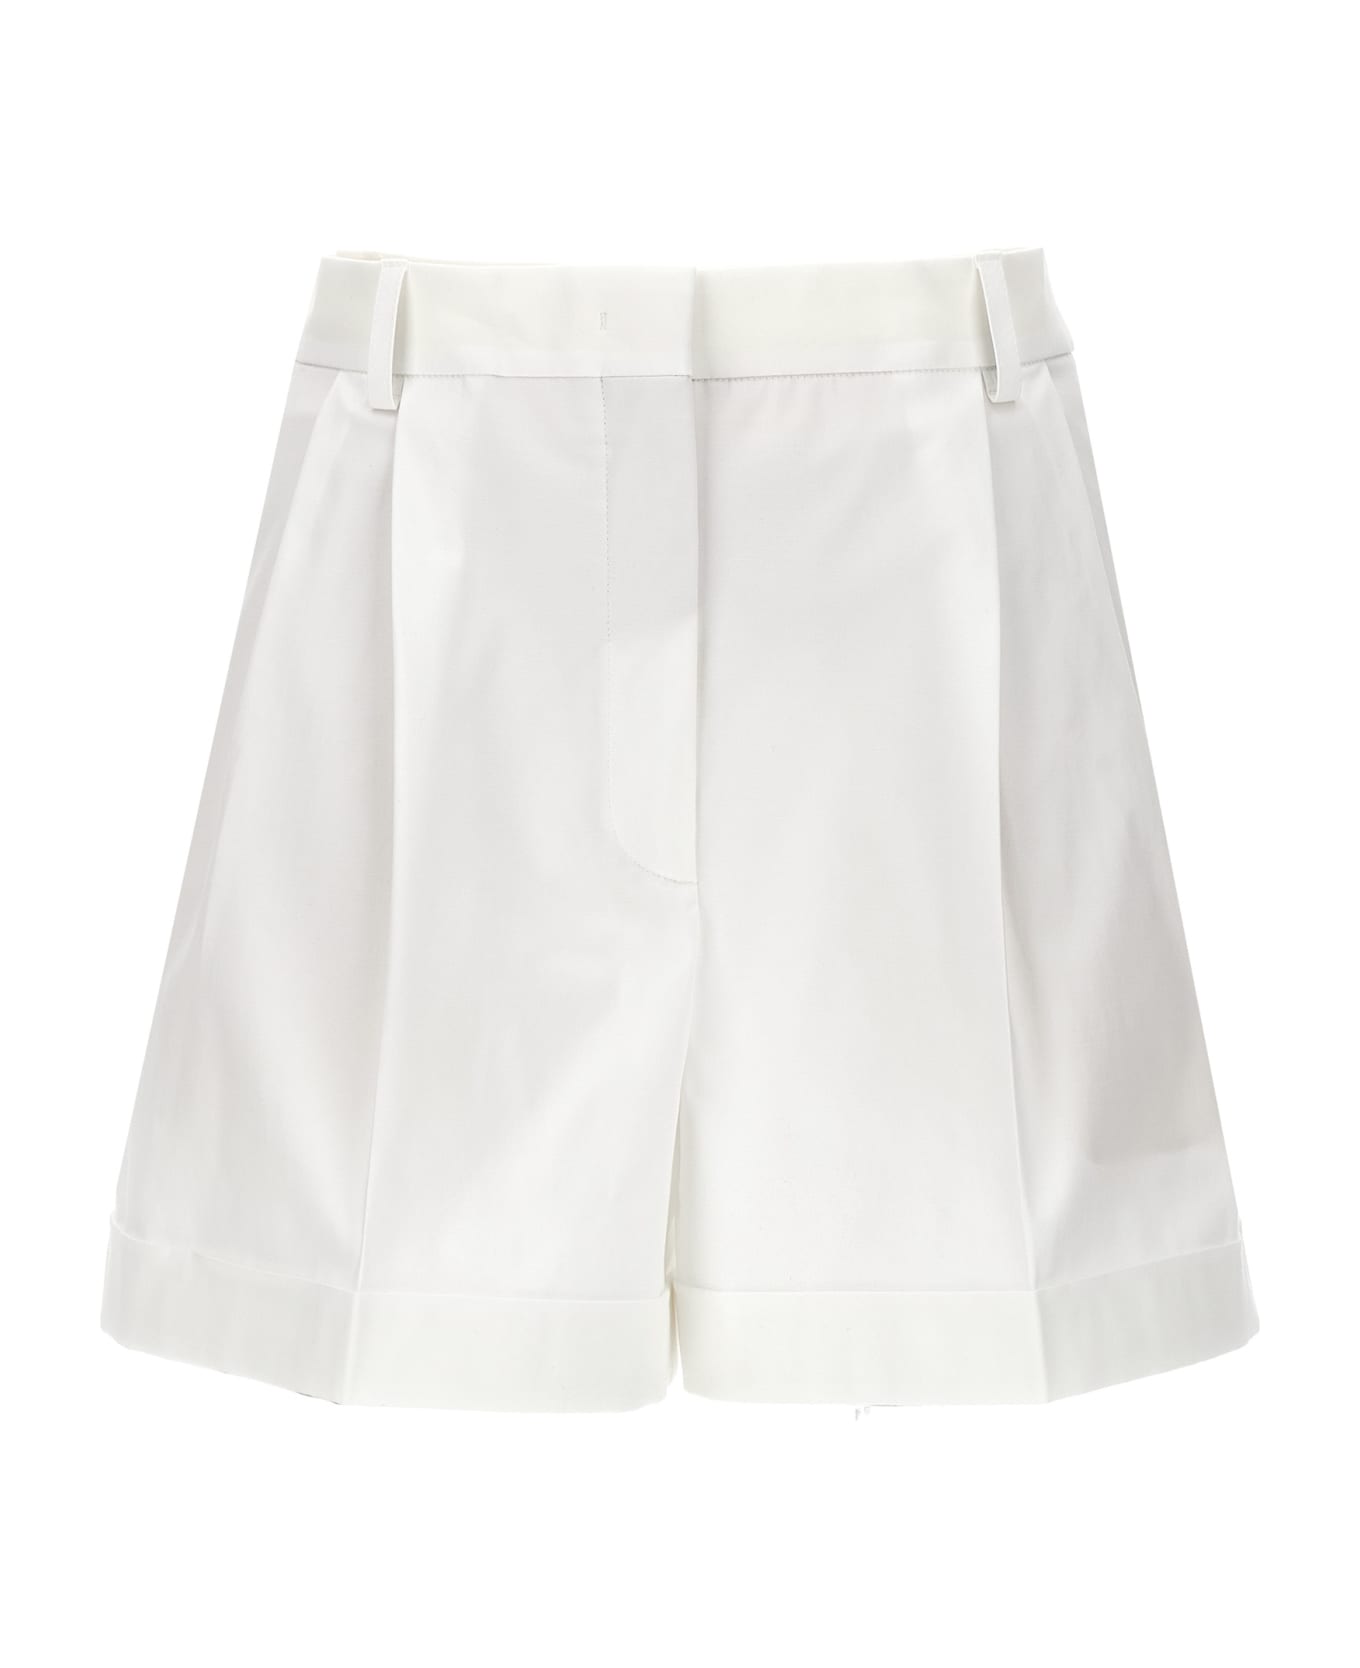 Moschino 'classic' Shorts - White